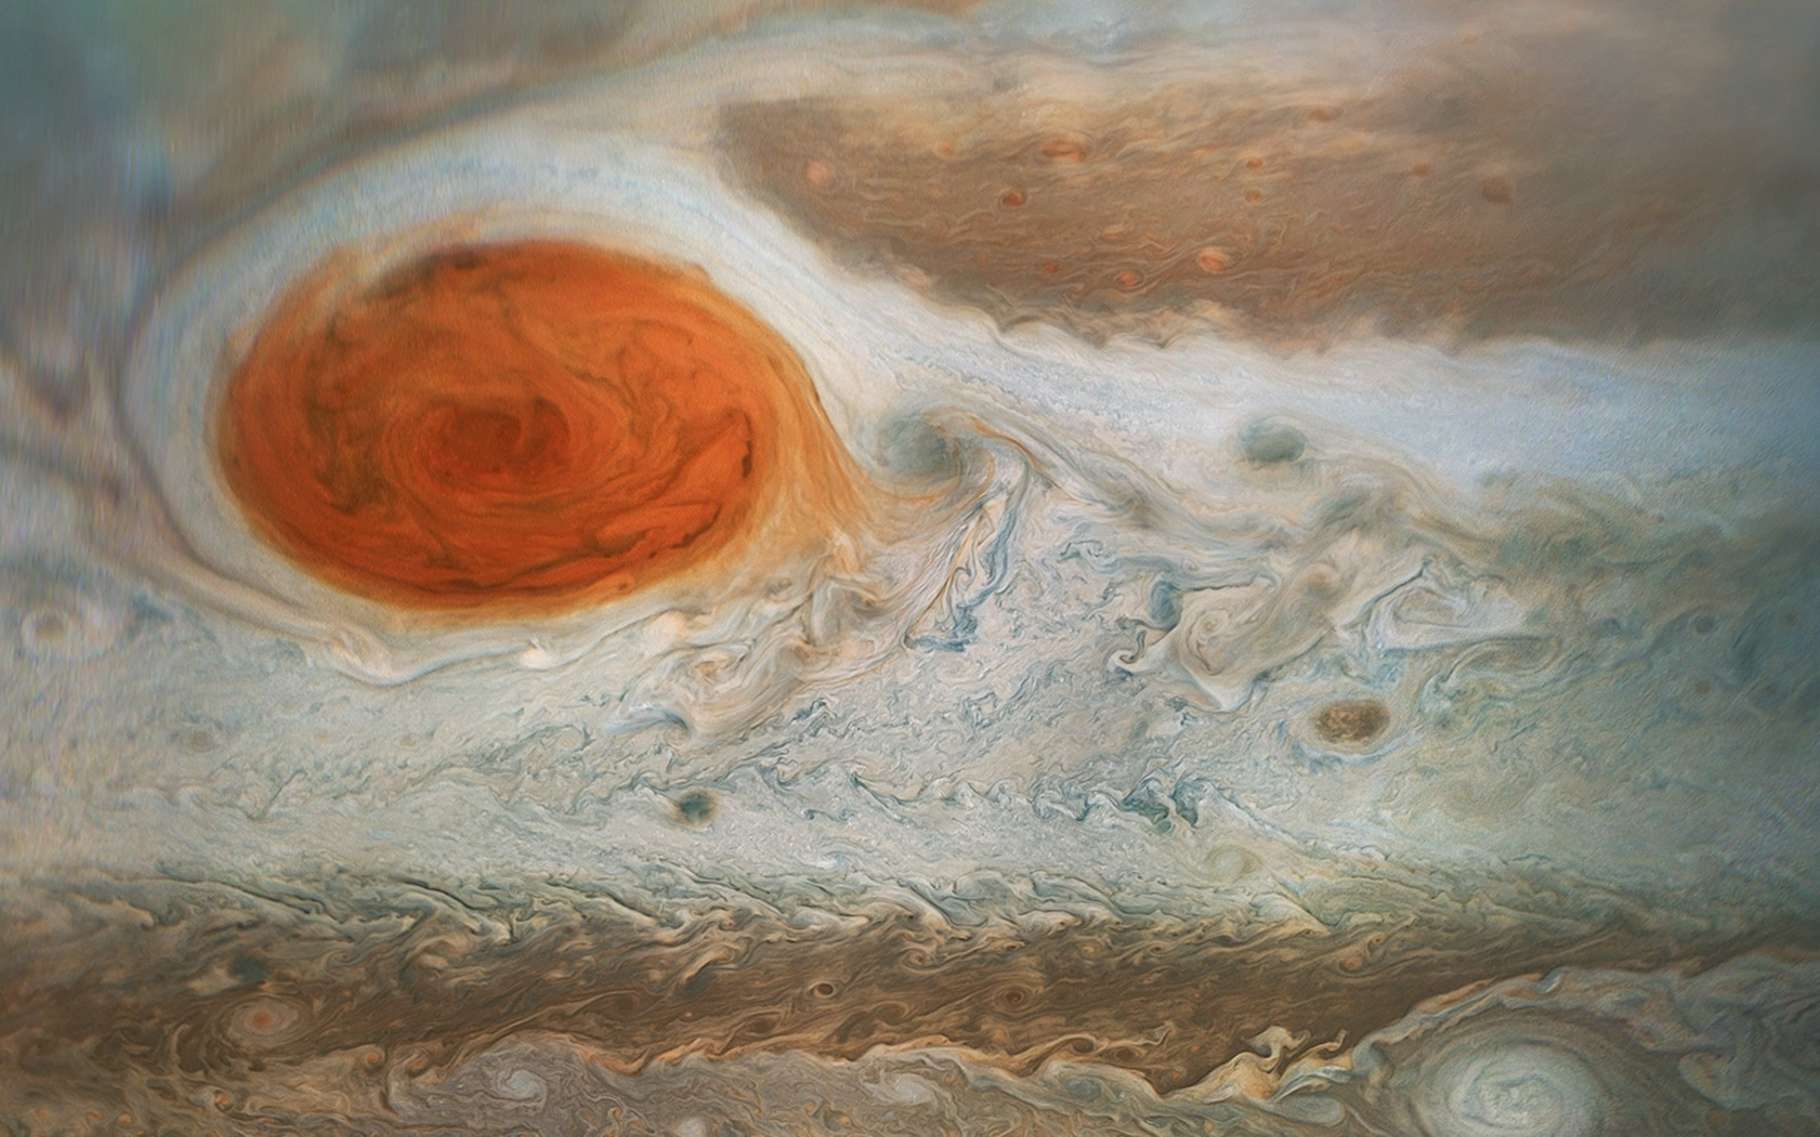 La Grande tache rouge de Jupiter ne serait pas la même que celle vue par Cassini il y a 350 ans !